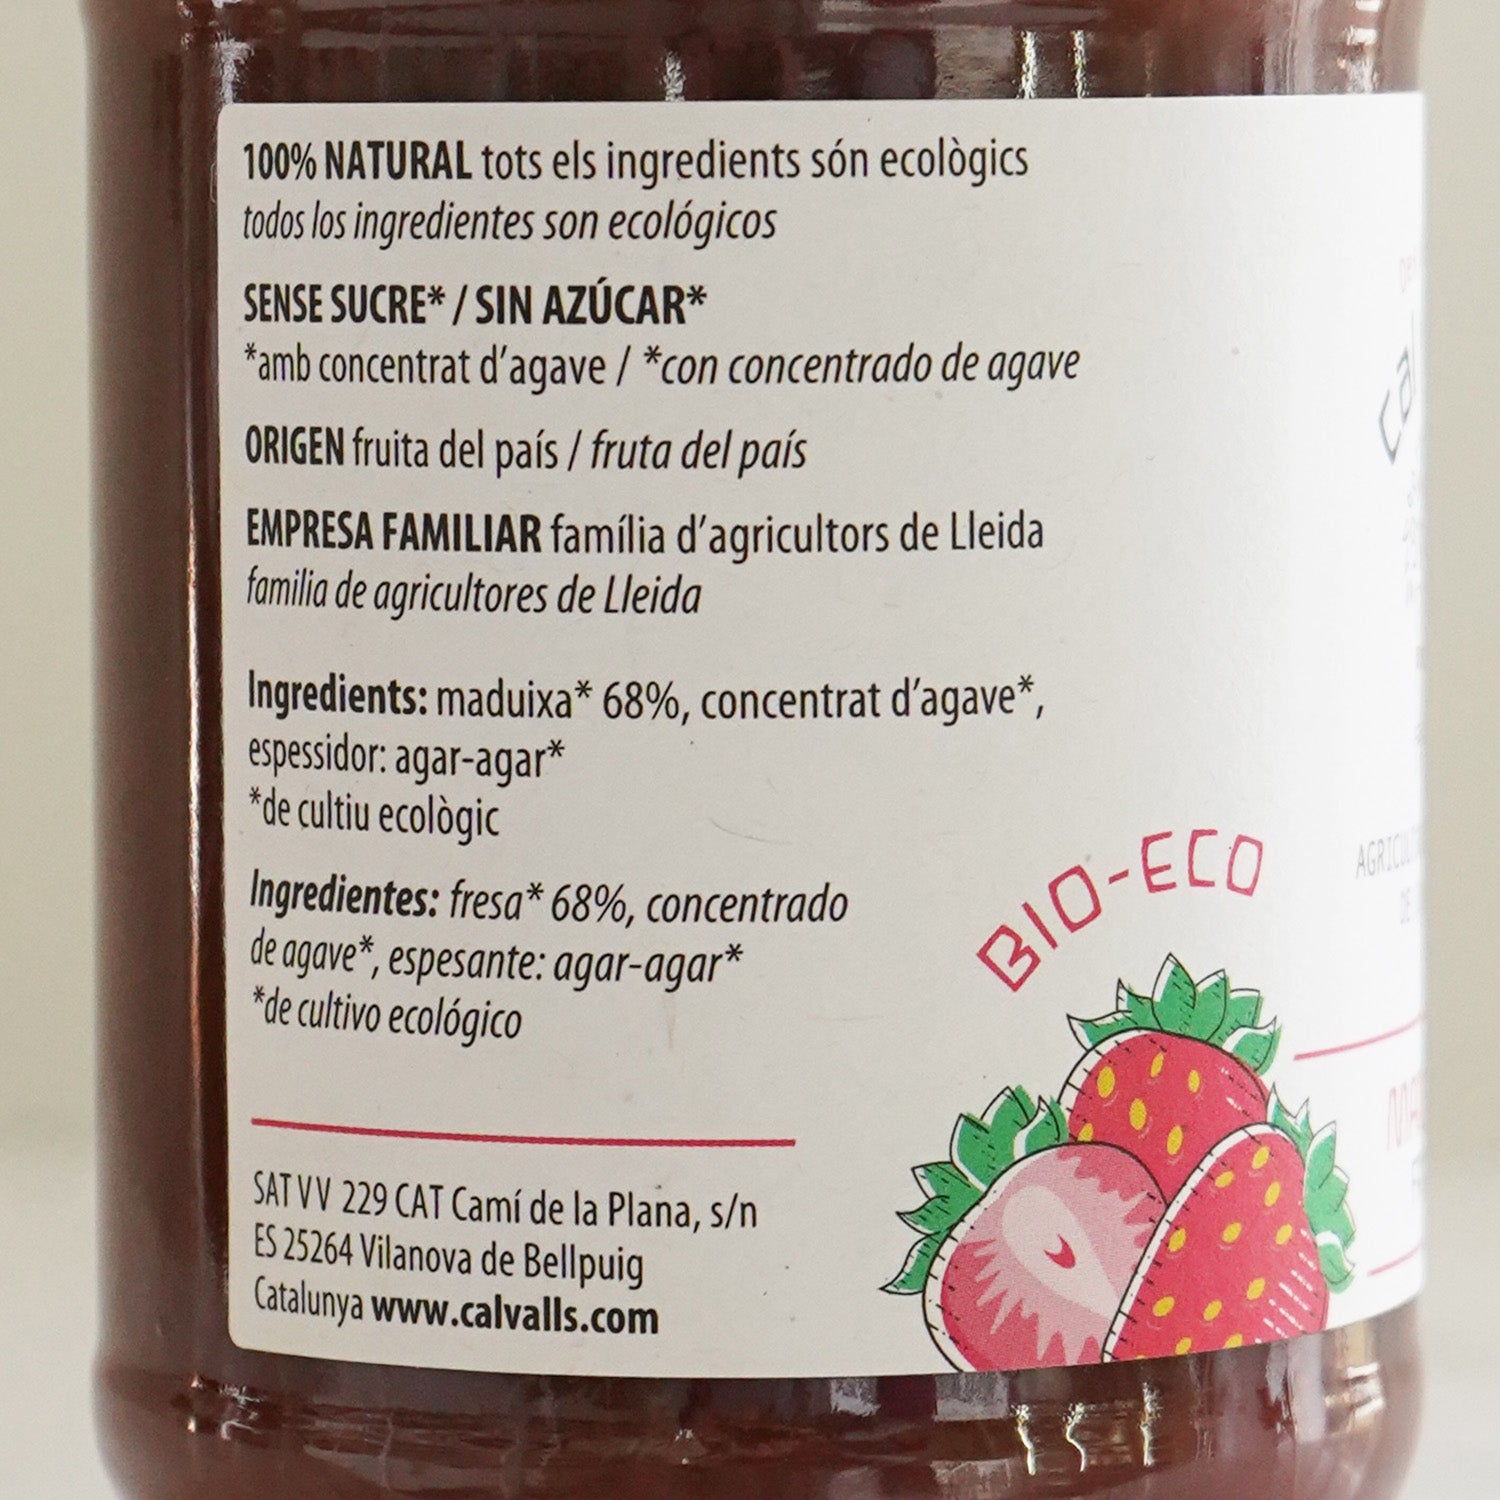 Detalle de los ingredientes de la mermelada de fresa ecológica